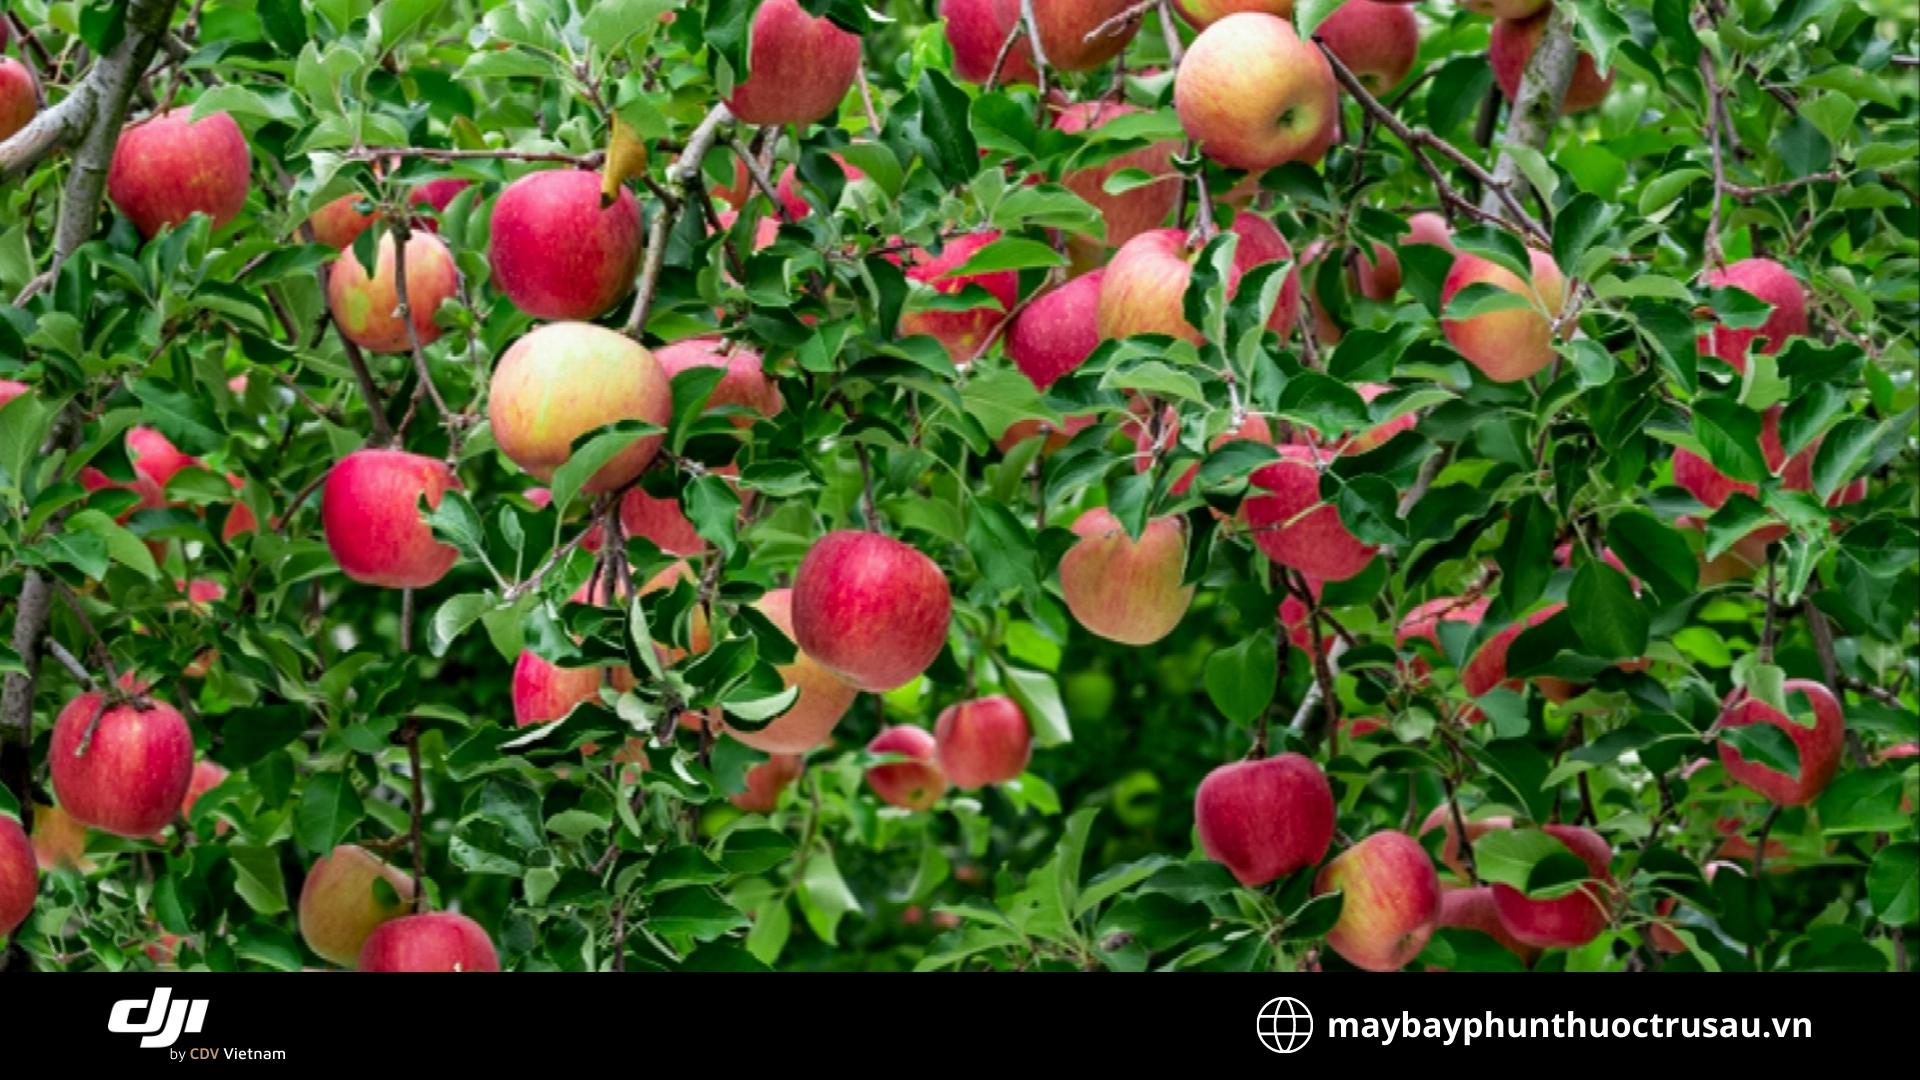 Các loại sâu bệnh hại cây táo và cách phòng trừ